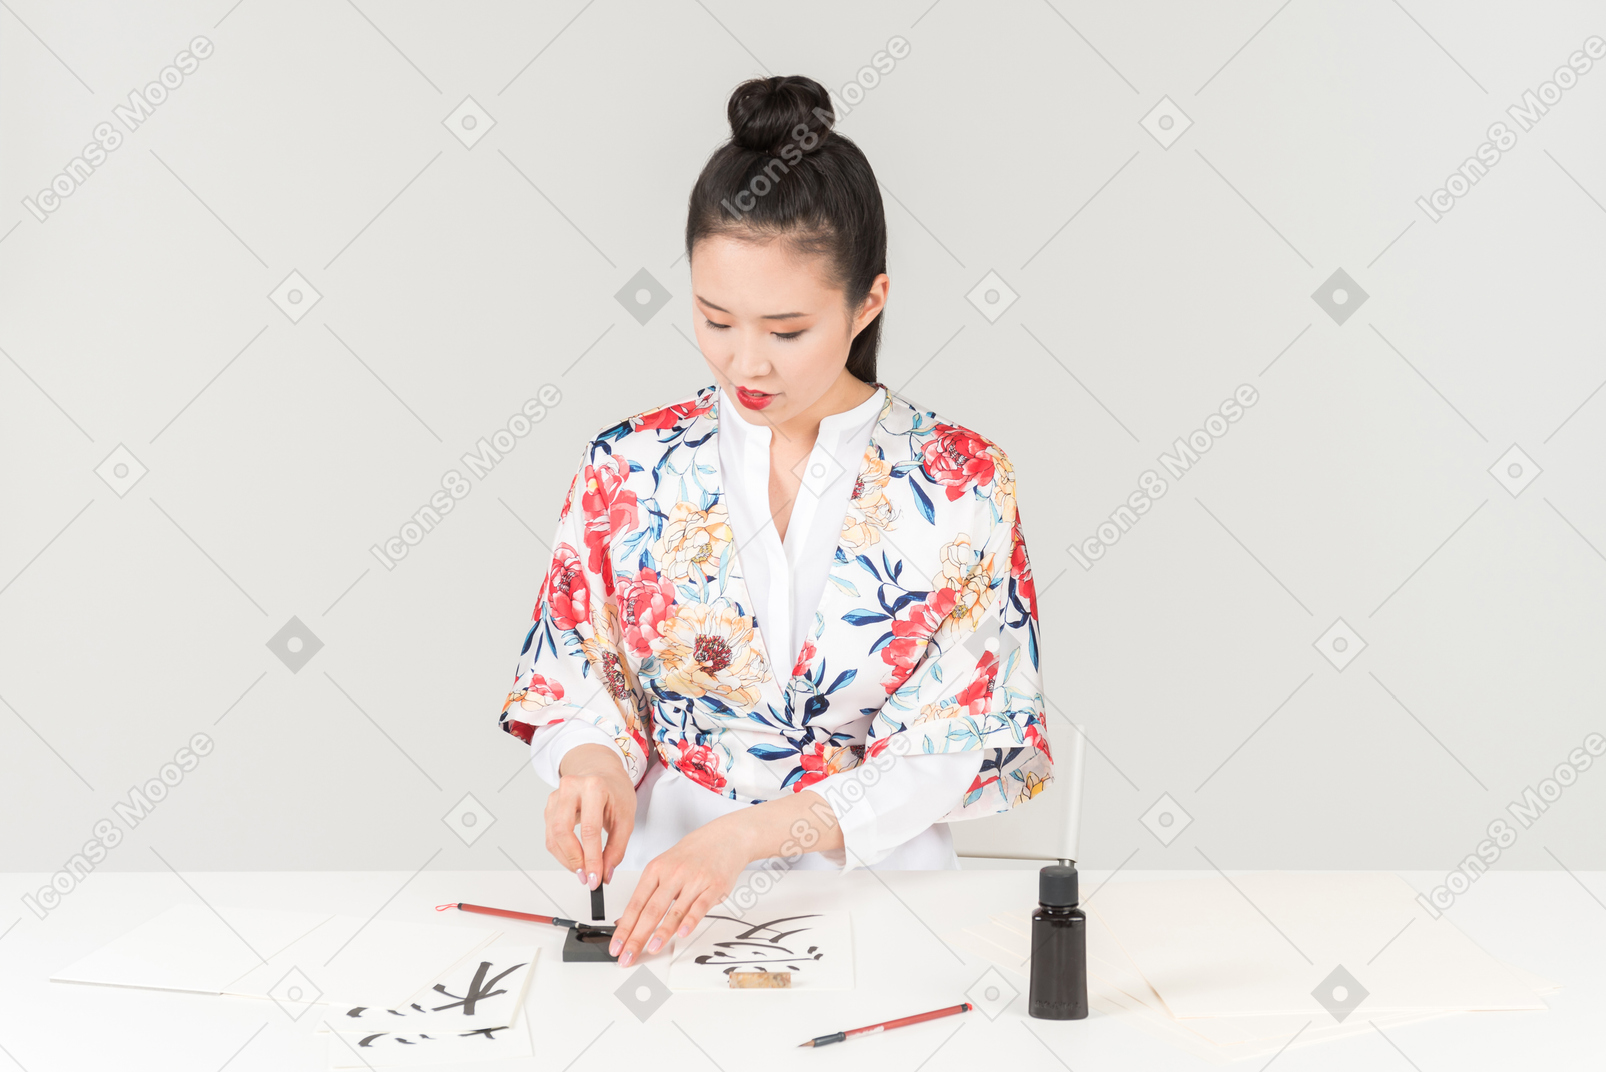 Junge frau in einem bunten japanischen kimono lernt kalligraphie, indem sie eine hieroglyphe zeichnet